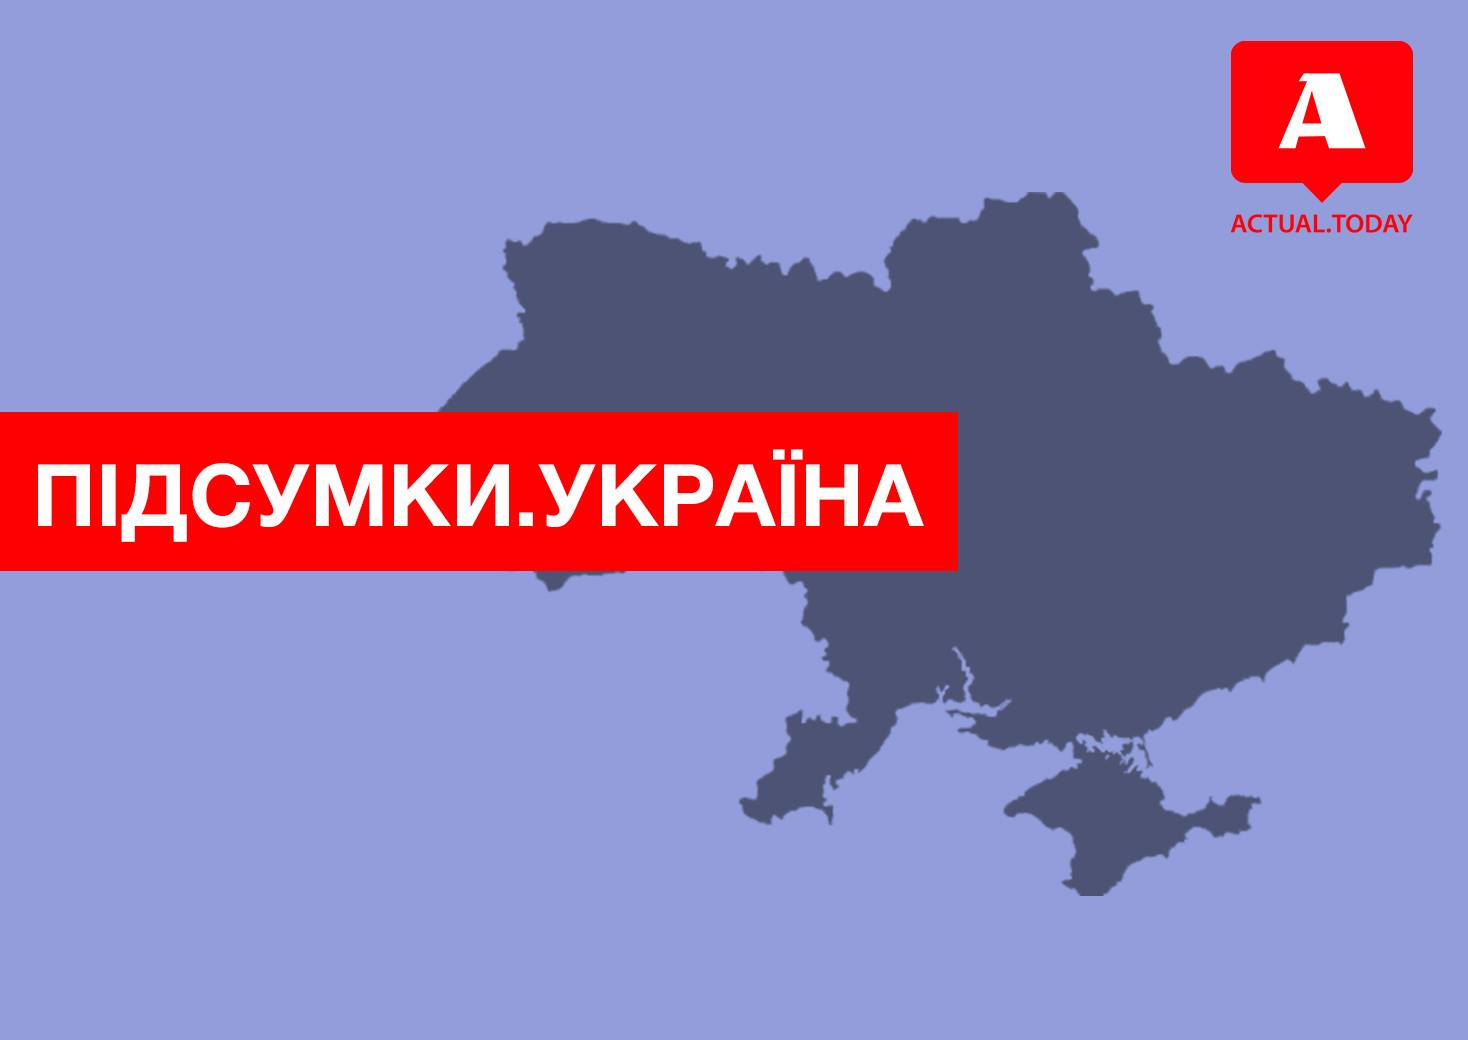 Филарета отстранили от управления, Саакашвили продолжает противостояние с Порошенко, еще трех глав ОГА сняли с постов – главные новости Украины за понедельник